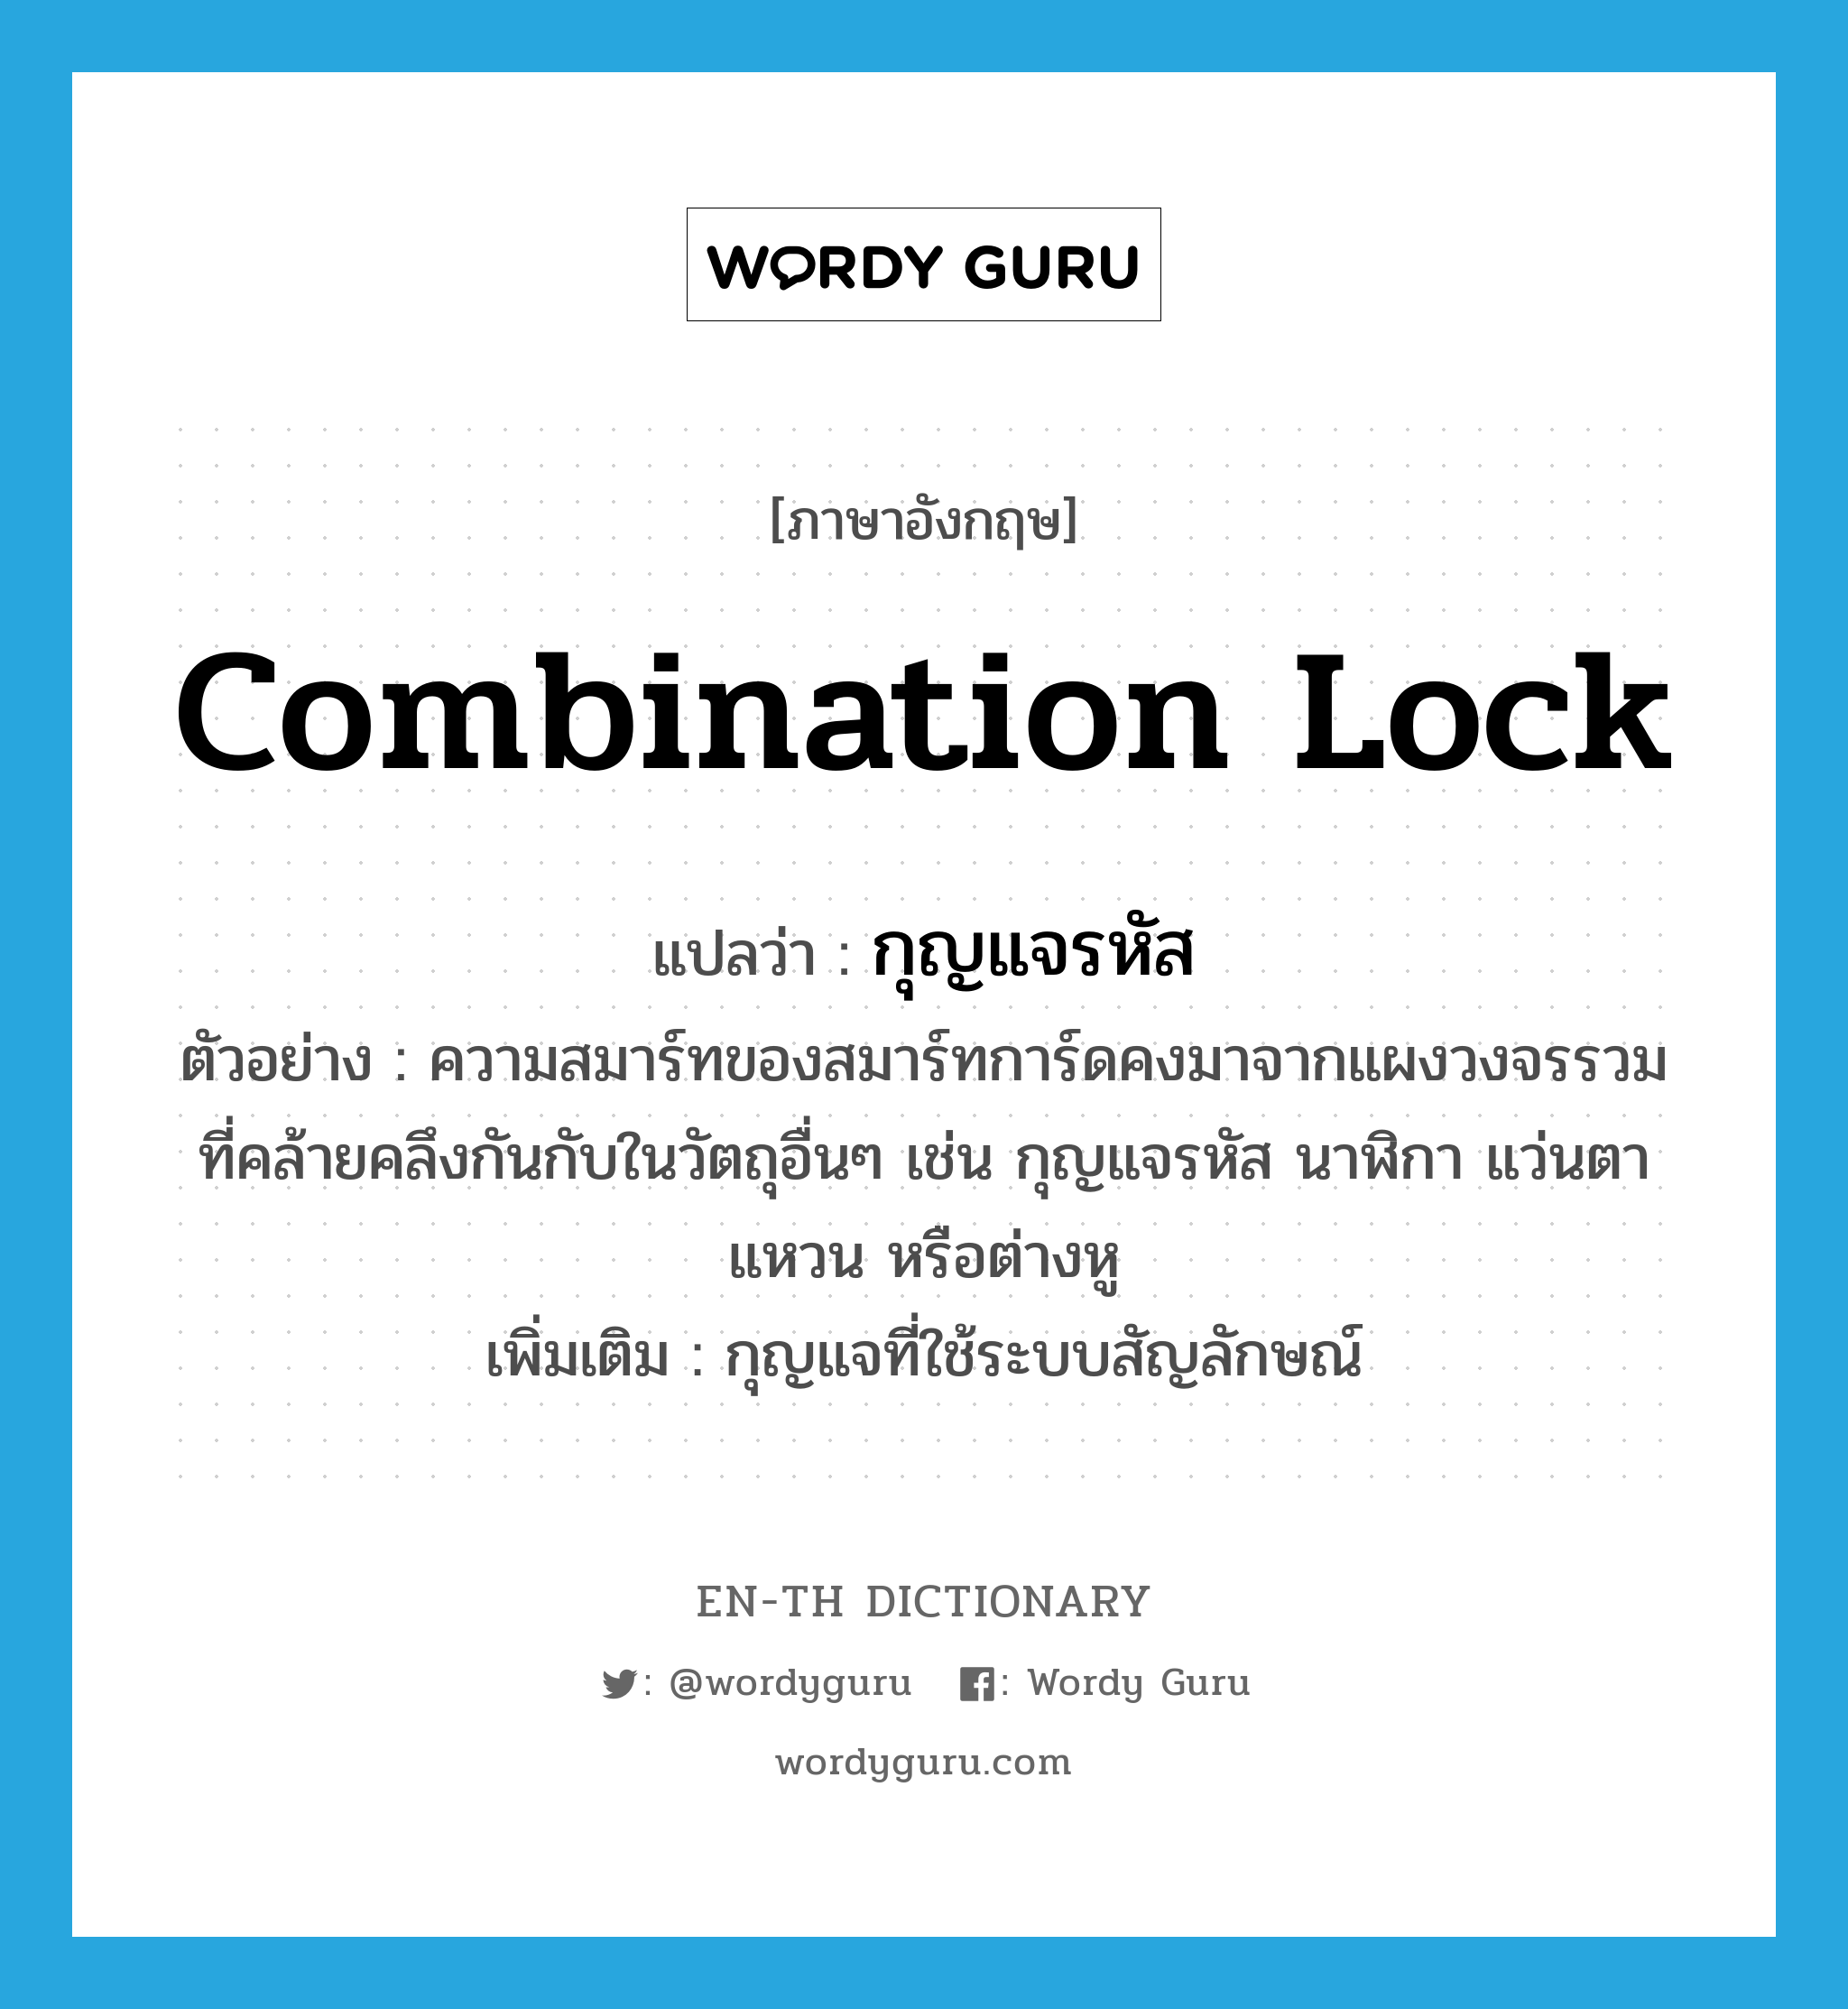 combination lock แปลว่า?, คำศัพท์ภาษาอังกฤษ combination lock แปลว่า กุญแจรหัส ประเภท N ตัวอย่าง ความสมาร์ทของสมาร์ทการ์ดคงมาจากแผงวงจรรวมที่คล้ายคลึงกันกับในวัตถุอื่นๆ เช่น กุญแจรหัส นาฬิกา แว่นตา แหวน หรือต่างหู เพิ่มเติม กุญแจที่ใช้ระบบสัญลักษณ์ หมวด N